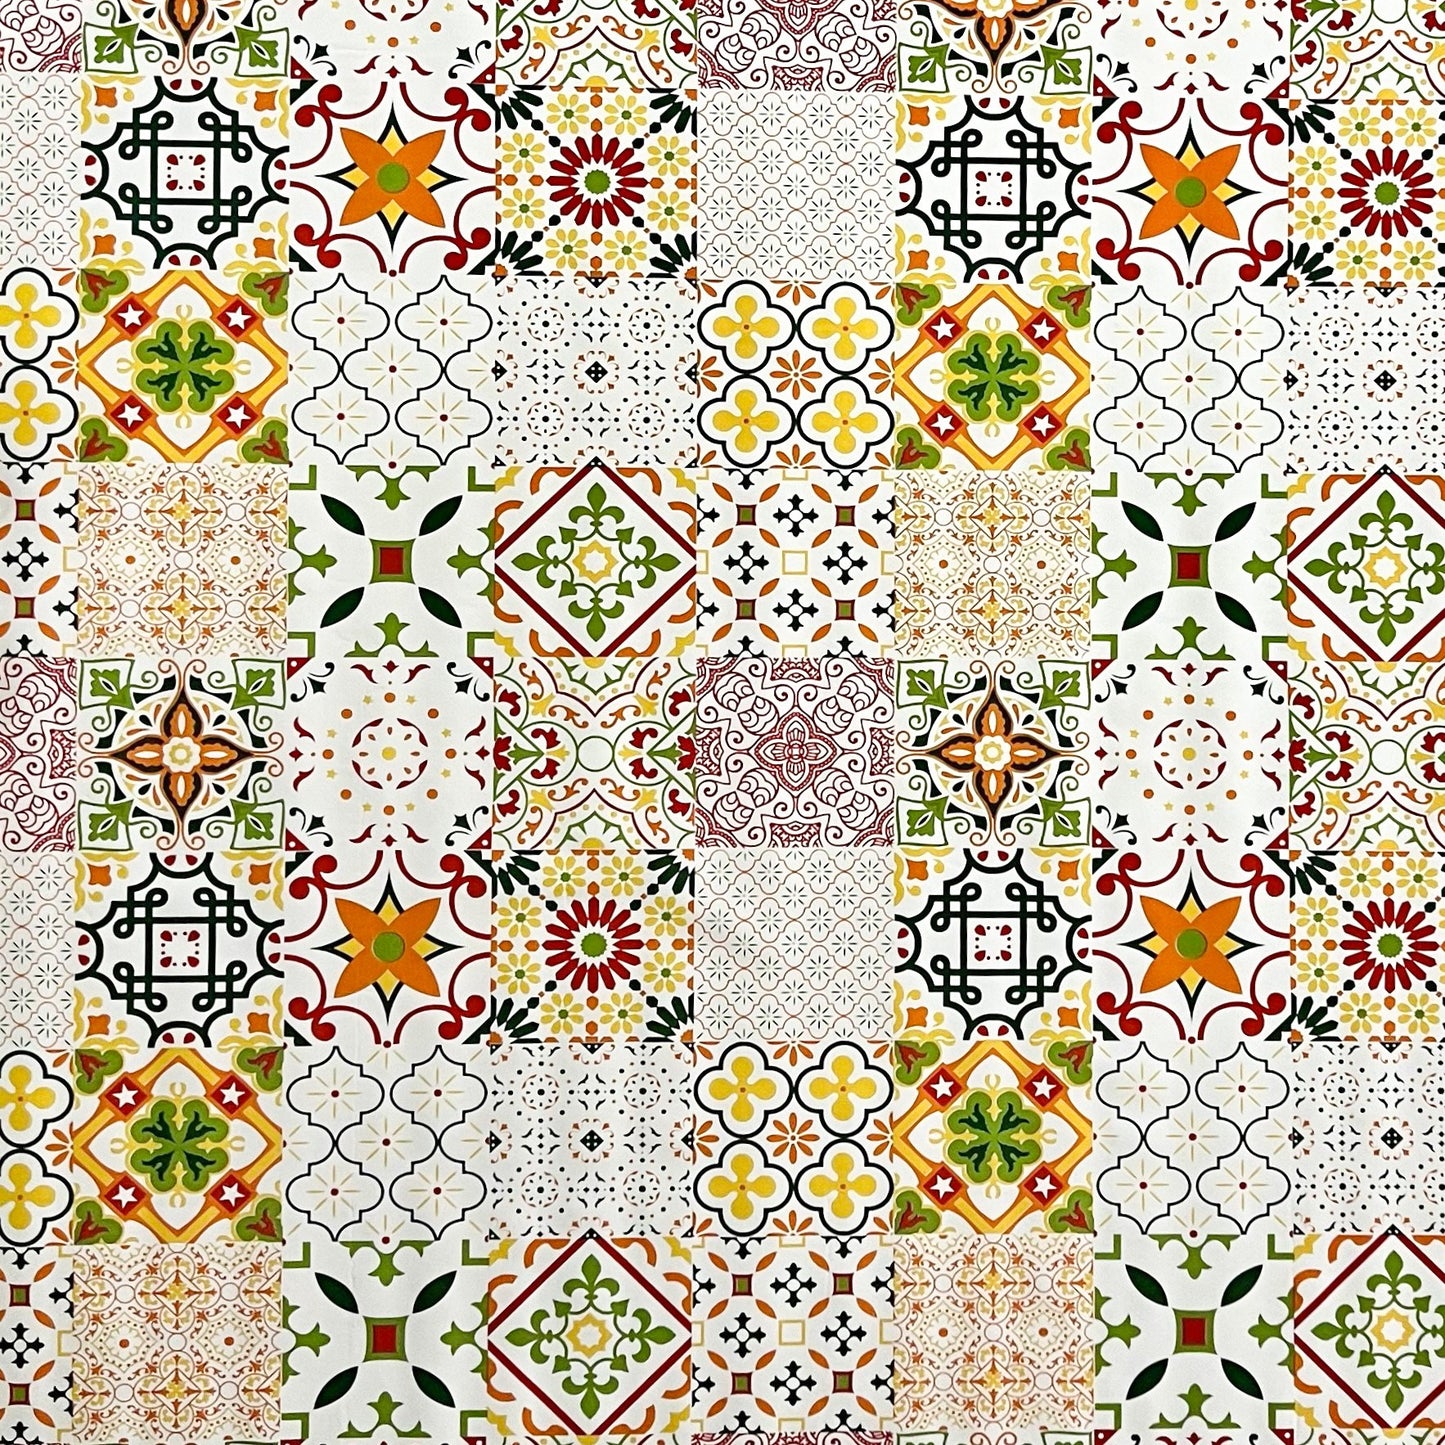 Wachstuch Tischdecke Mosaik